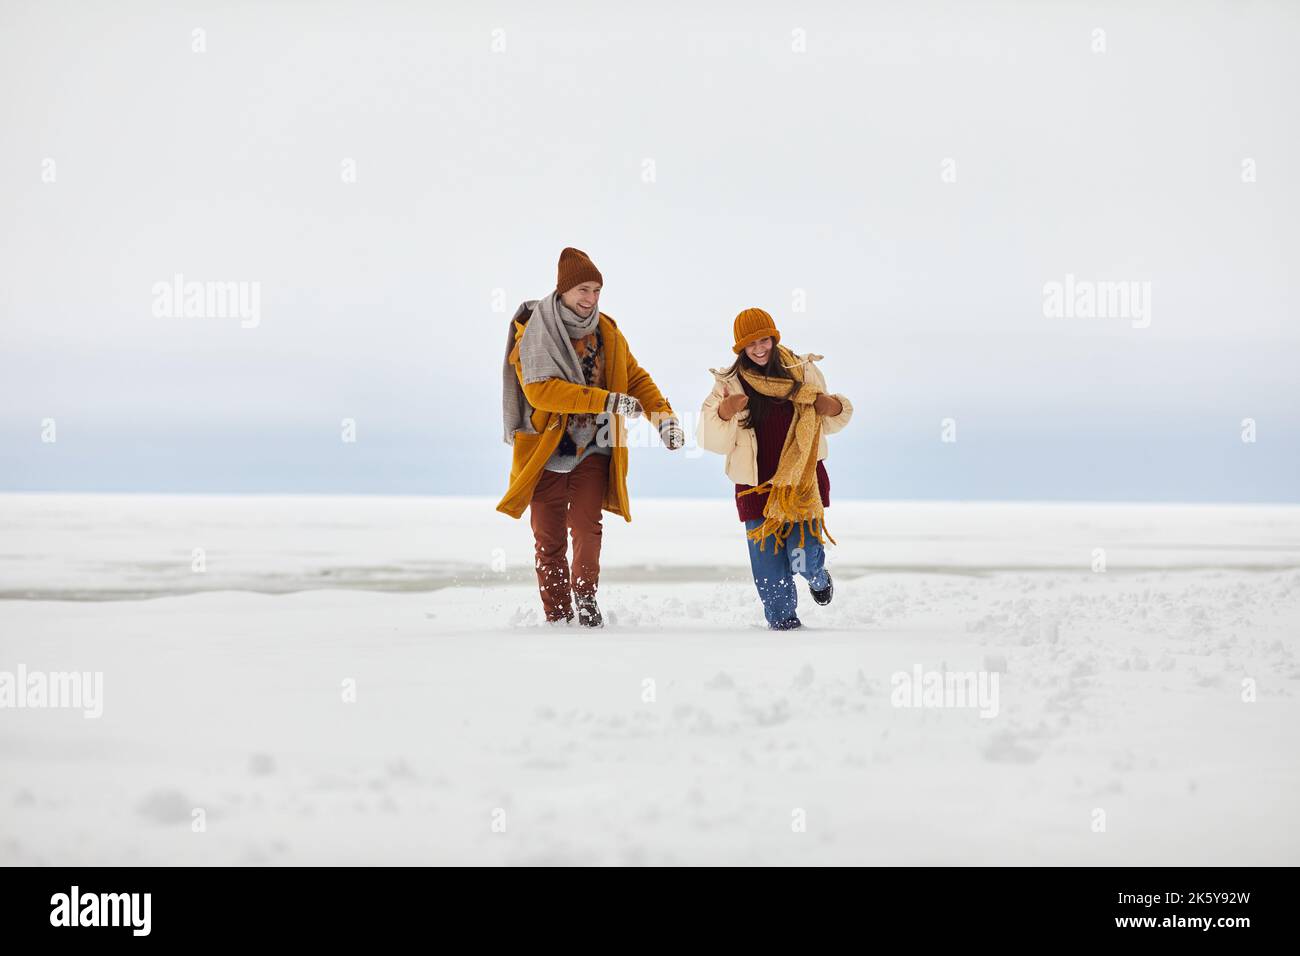 Vorderansicht Porträt eines sorglosen jungen Paares, das im Winter durch einen gefrorenen See auf die Kamera zuläuft, Kopierraum Stockfoto